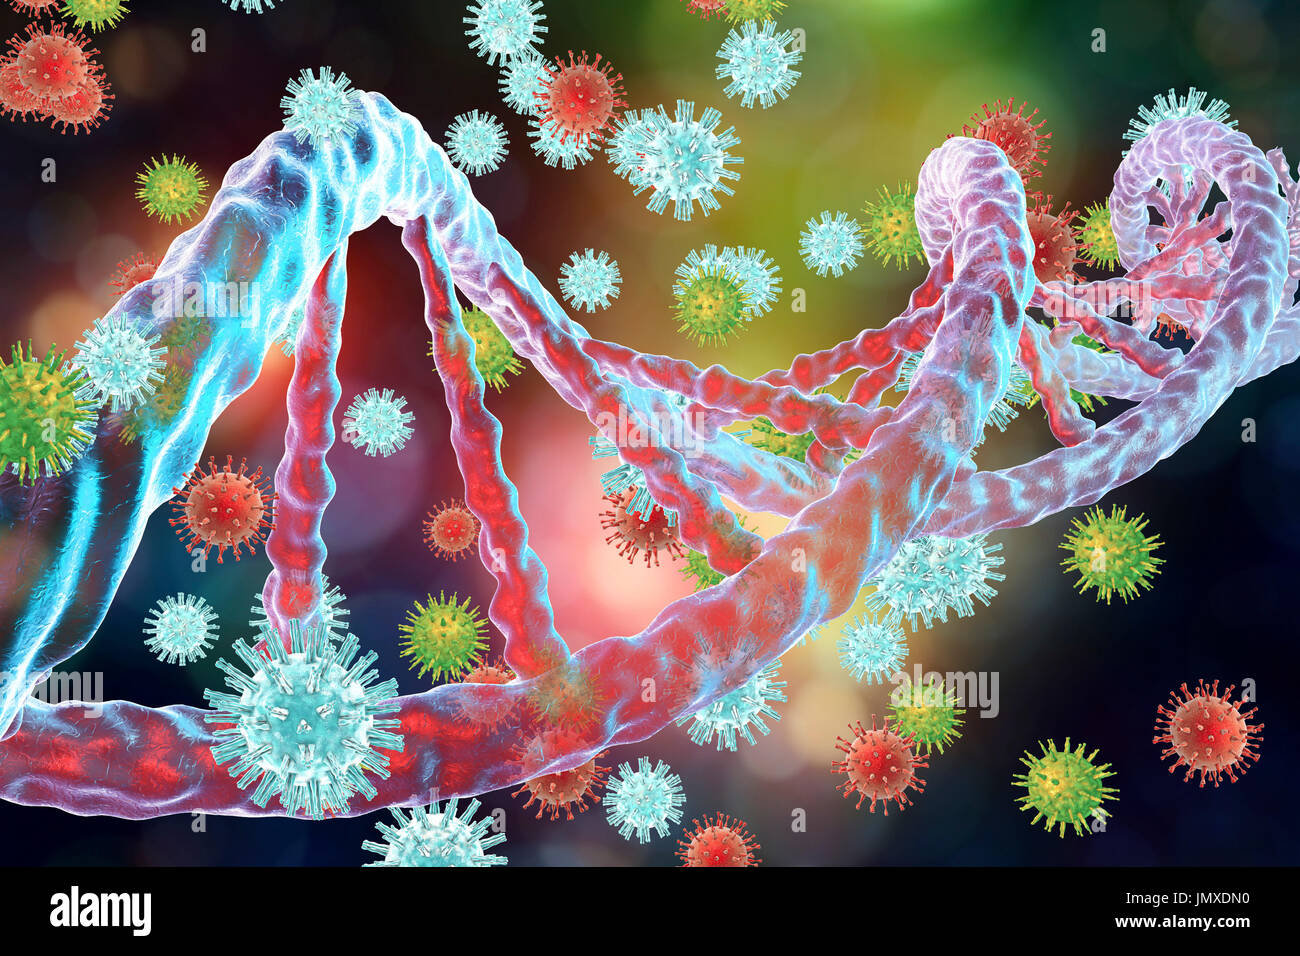 Konzeptbild für die Interaktion zwischen Viren und Wirtszelle DNA (Desoxyribonukleinsäure). Integration von Viren in DNA ist der wichtigste Schritt in der Onkogenese. Verschiedene Viren wie Hepatitis B-Virus, Papilloma Virus und andere, können Host DNA als insertional Mutagene, wodurch die Aktivierung einer zellulären Protoonkogenproduktes führt schließlich zu unkontrollierten Vermehrung und Krebs Zellentwicklung integrieren. Stockfoto